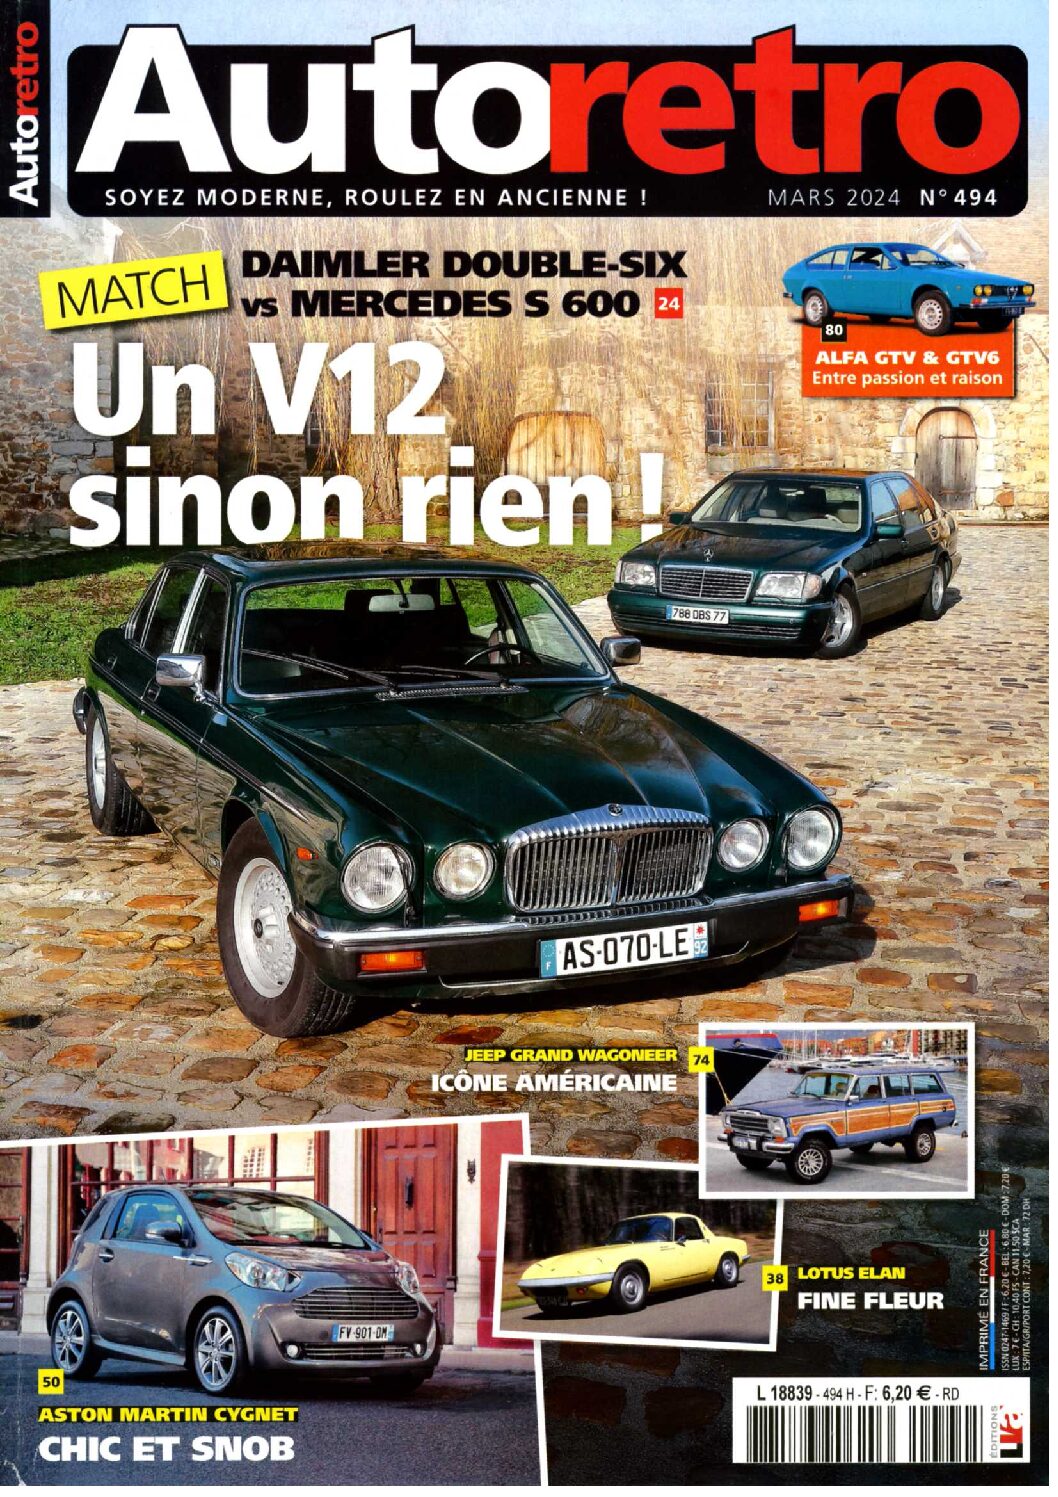 Match Daimler Double-Six vs Mercedes Classe S 600L